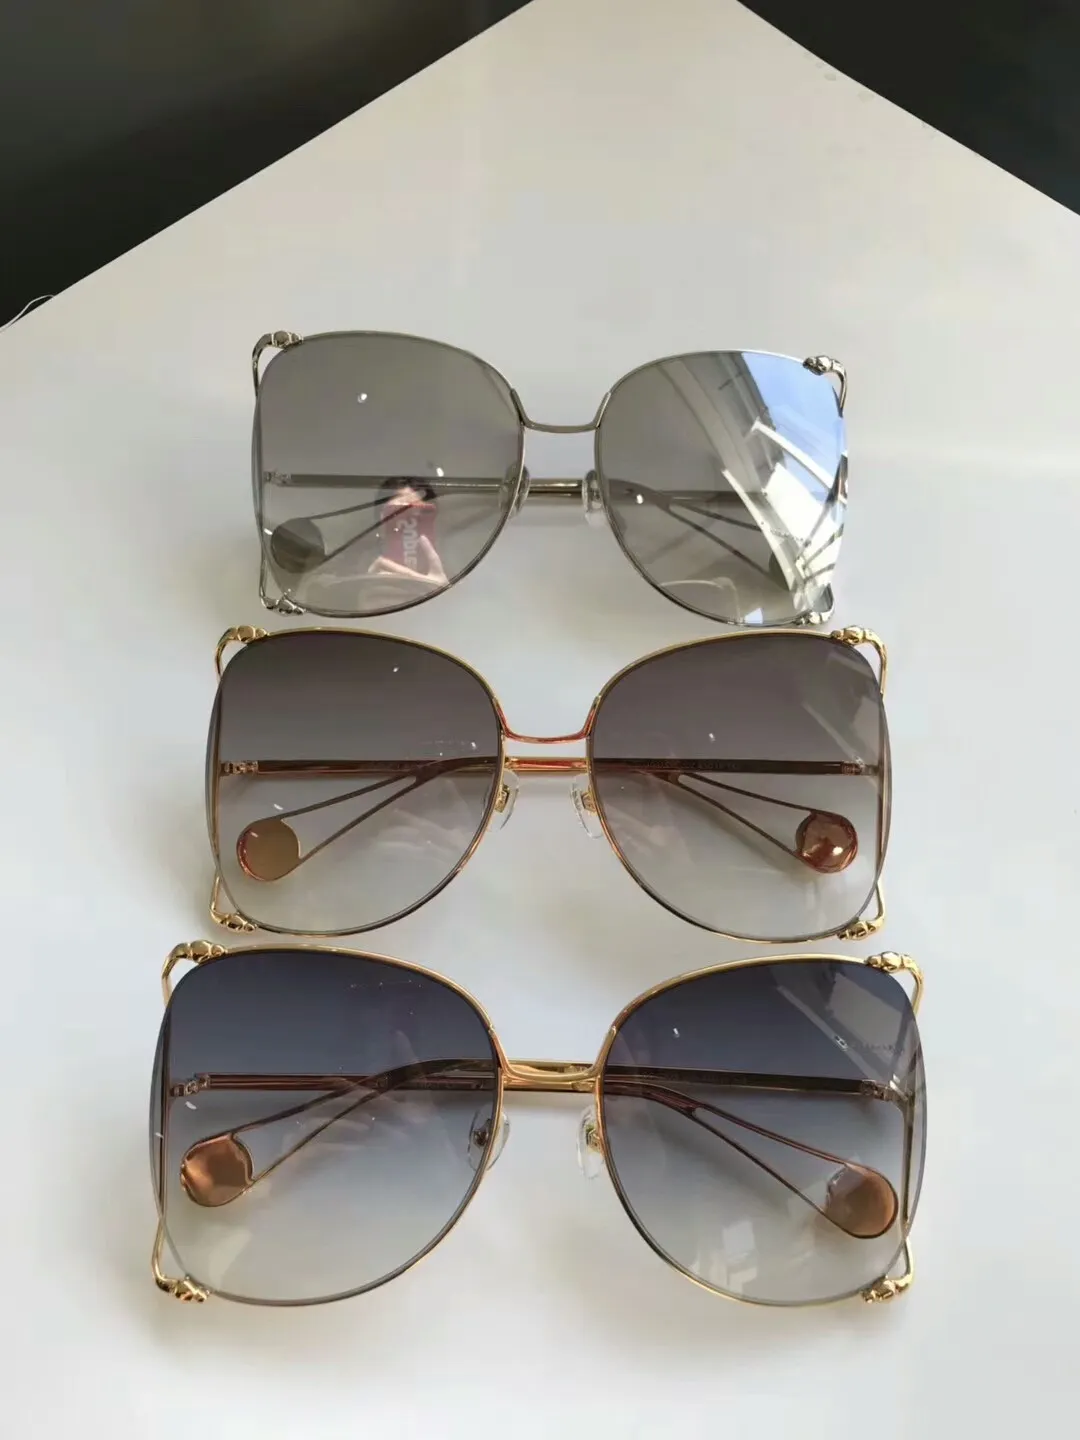 Nuovi occhiali da sole firmati 0252 occhiali da sole donna uomo occhiali da sole donna marchio designer rivestimento protezione UV occhiali da sole moda oculos de